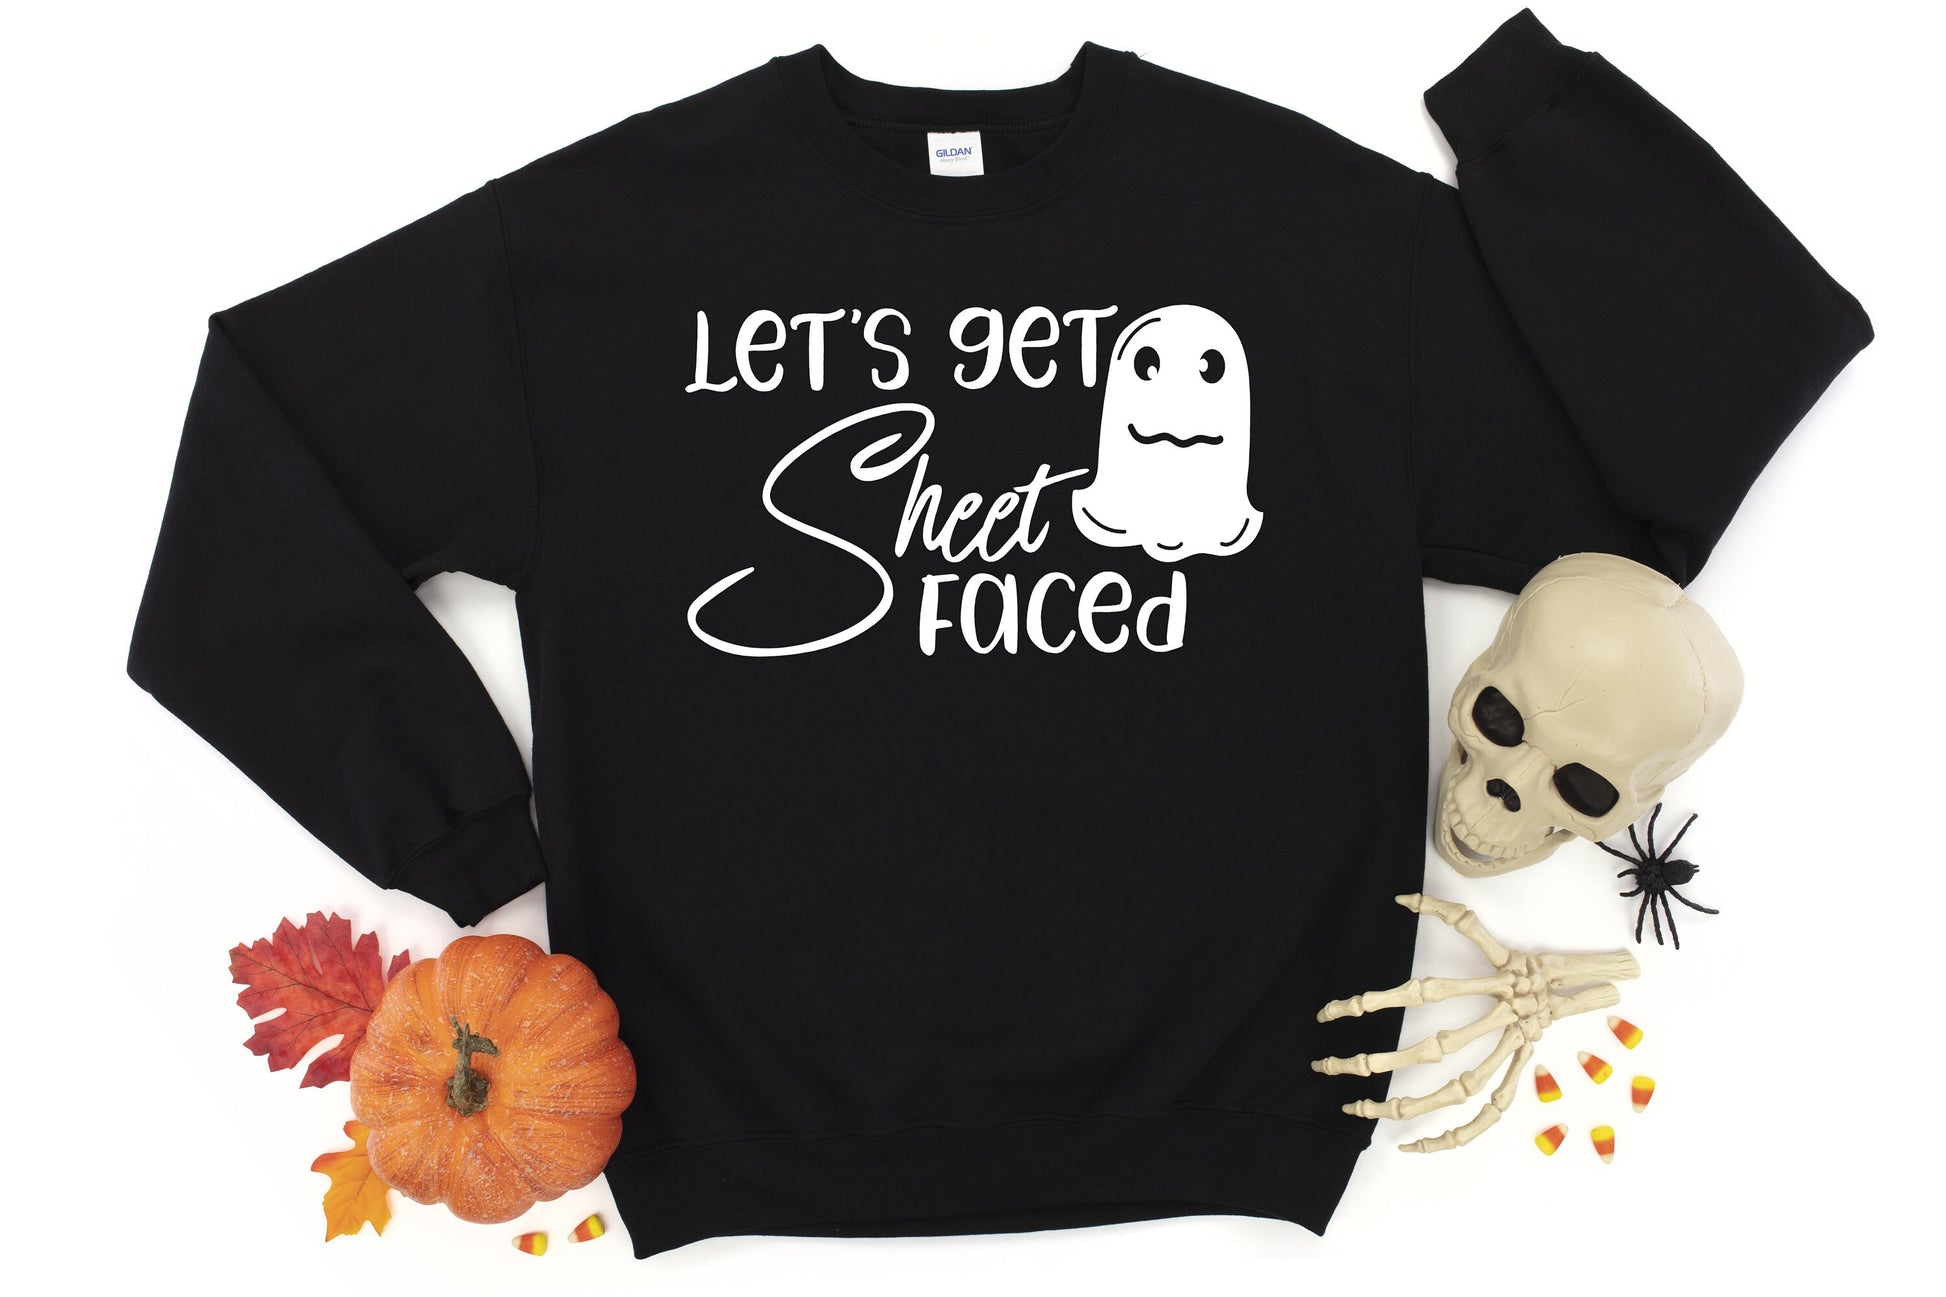 Let's Get Sheet Faced Halloween Unisex Crewneck Fleece Pullover Sweatshirt - Halloween Party Sweatshirt